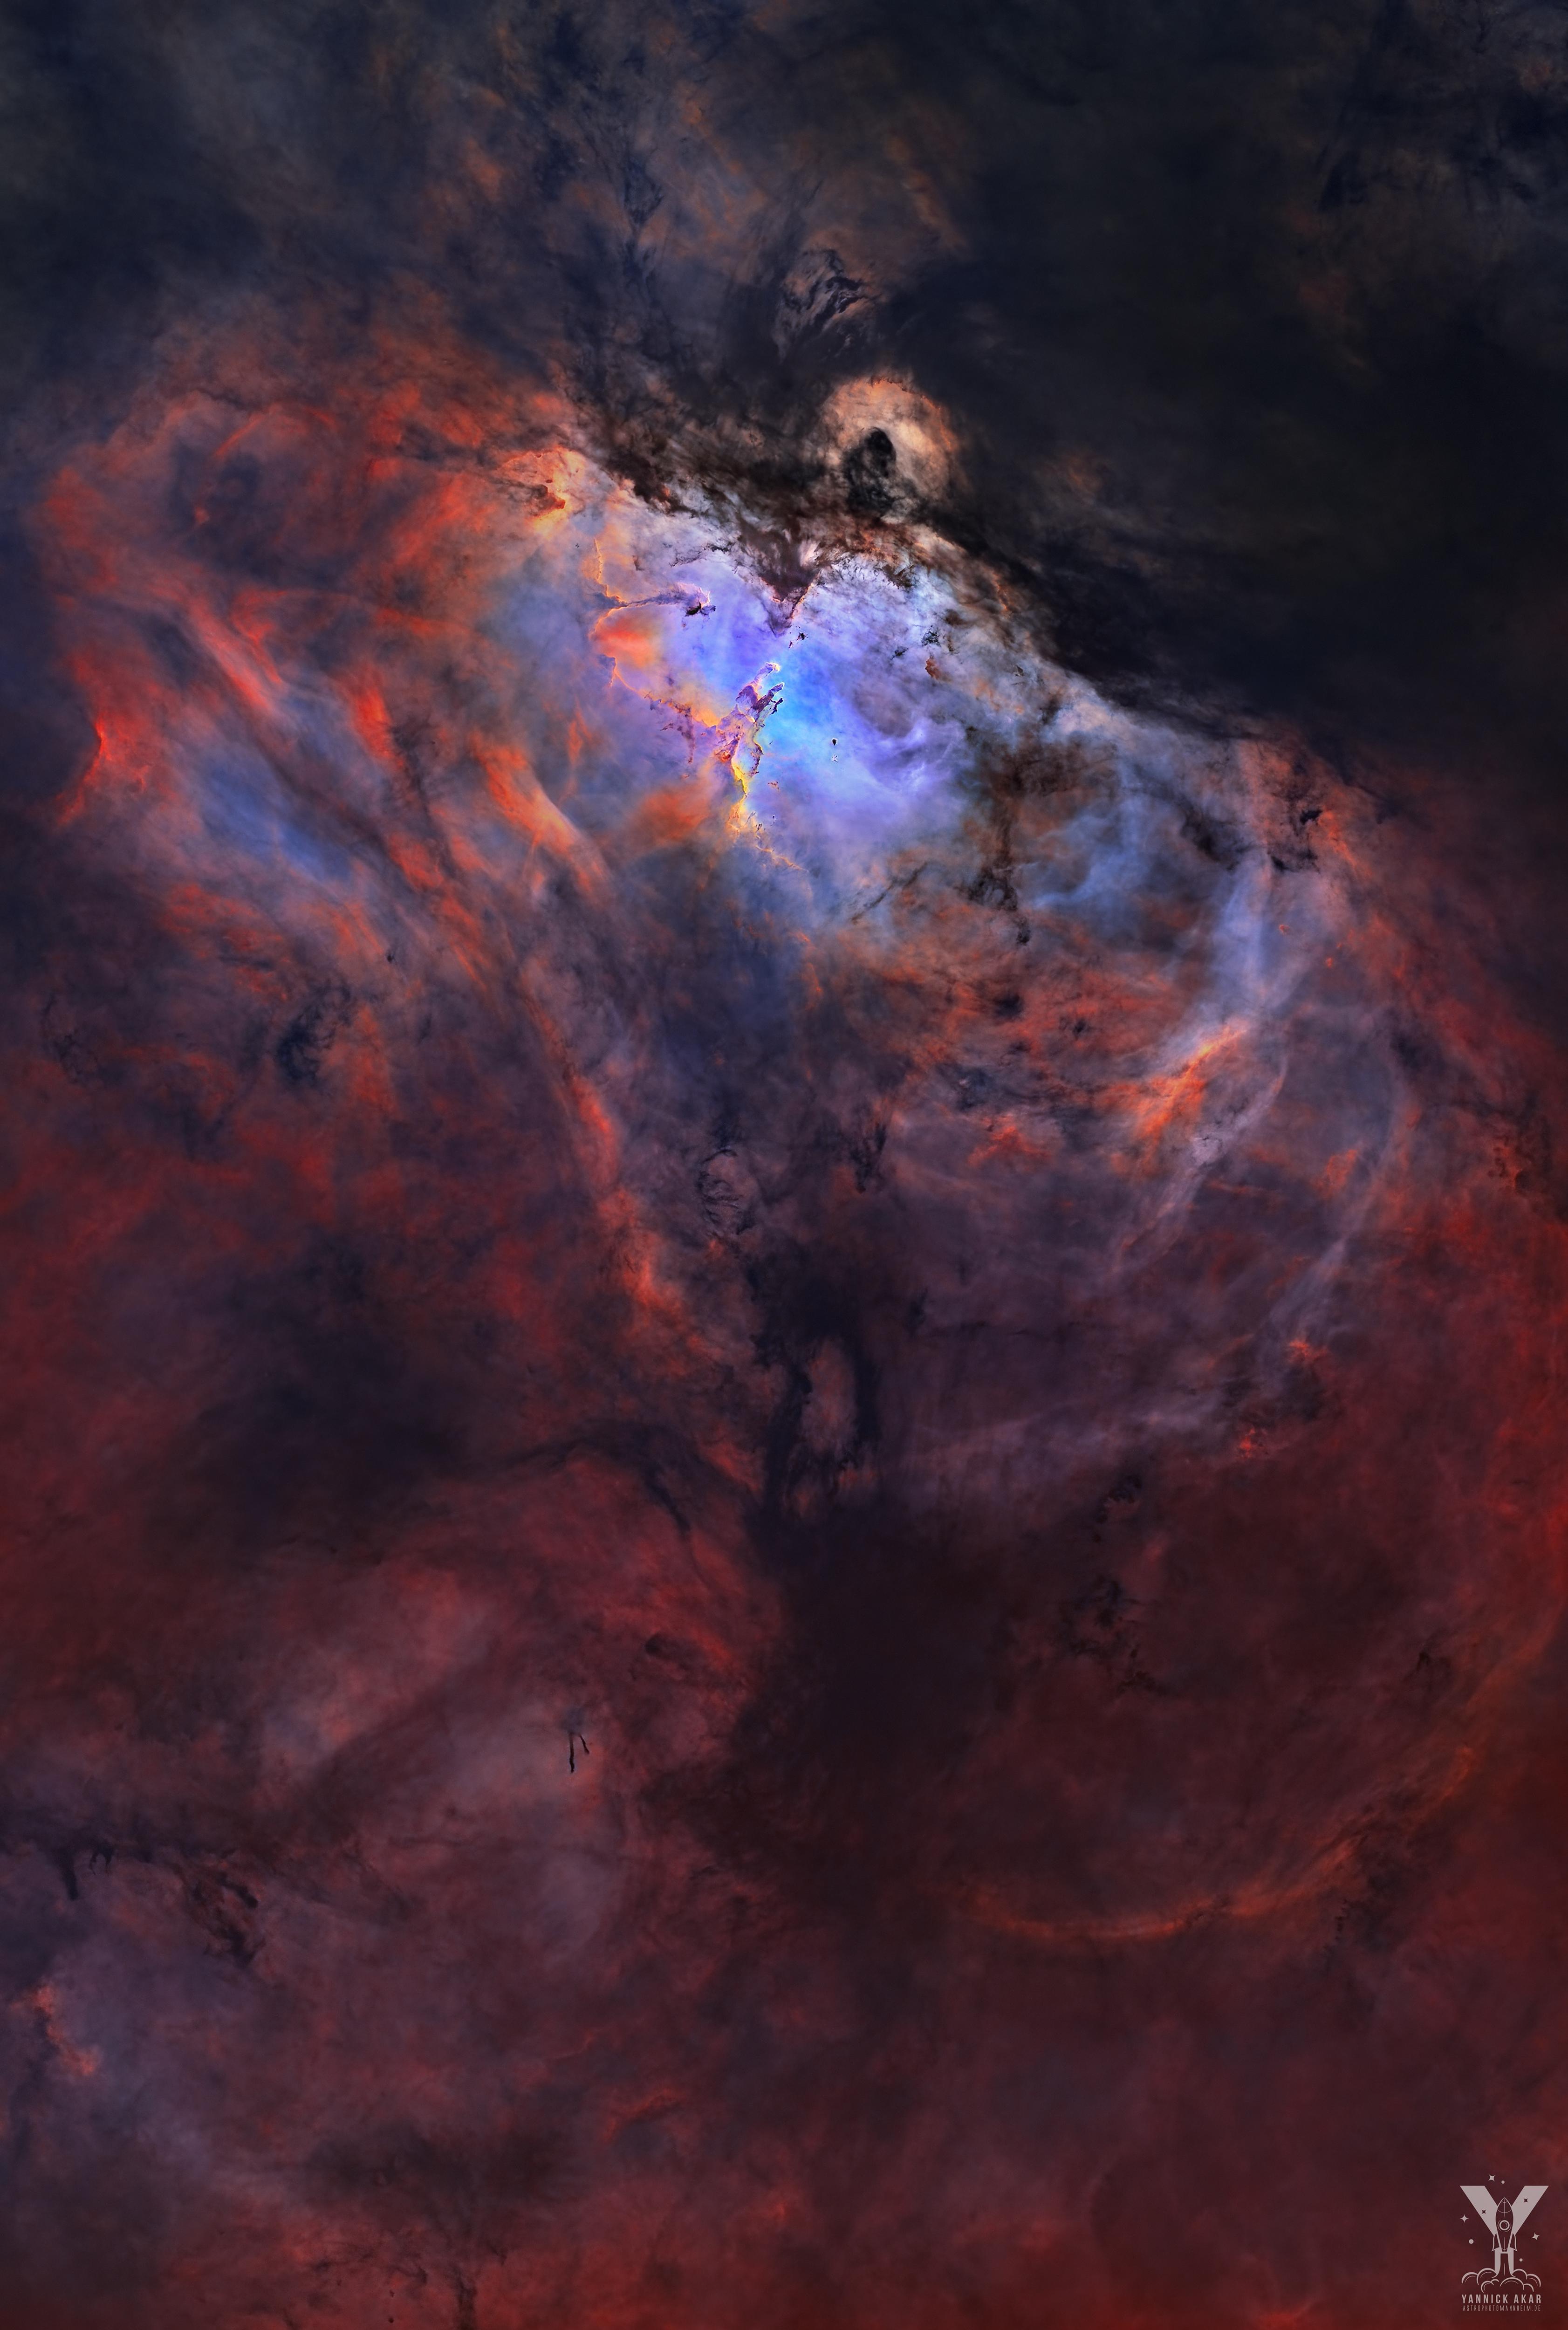 منطقة التشكّل النجمي م16 المعروفة كذلك باسم سديم العُقاب — لكن مع إزالة النجوم رقميّاً